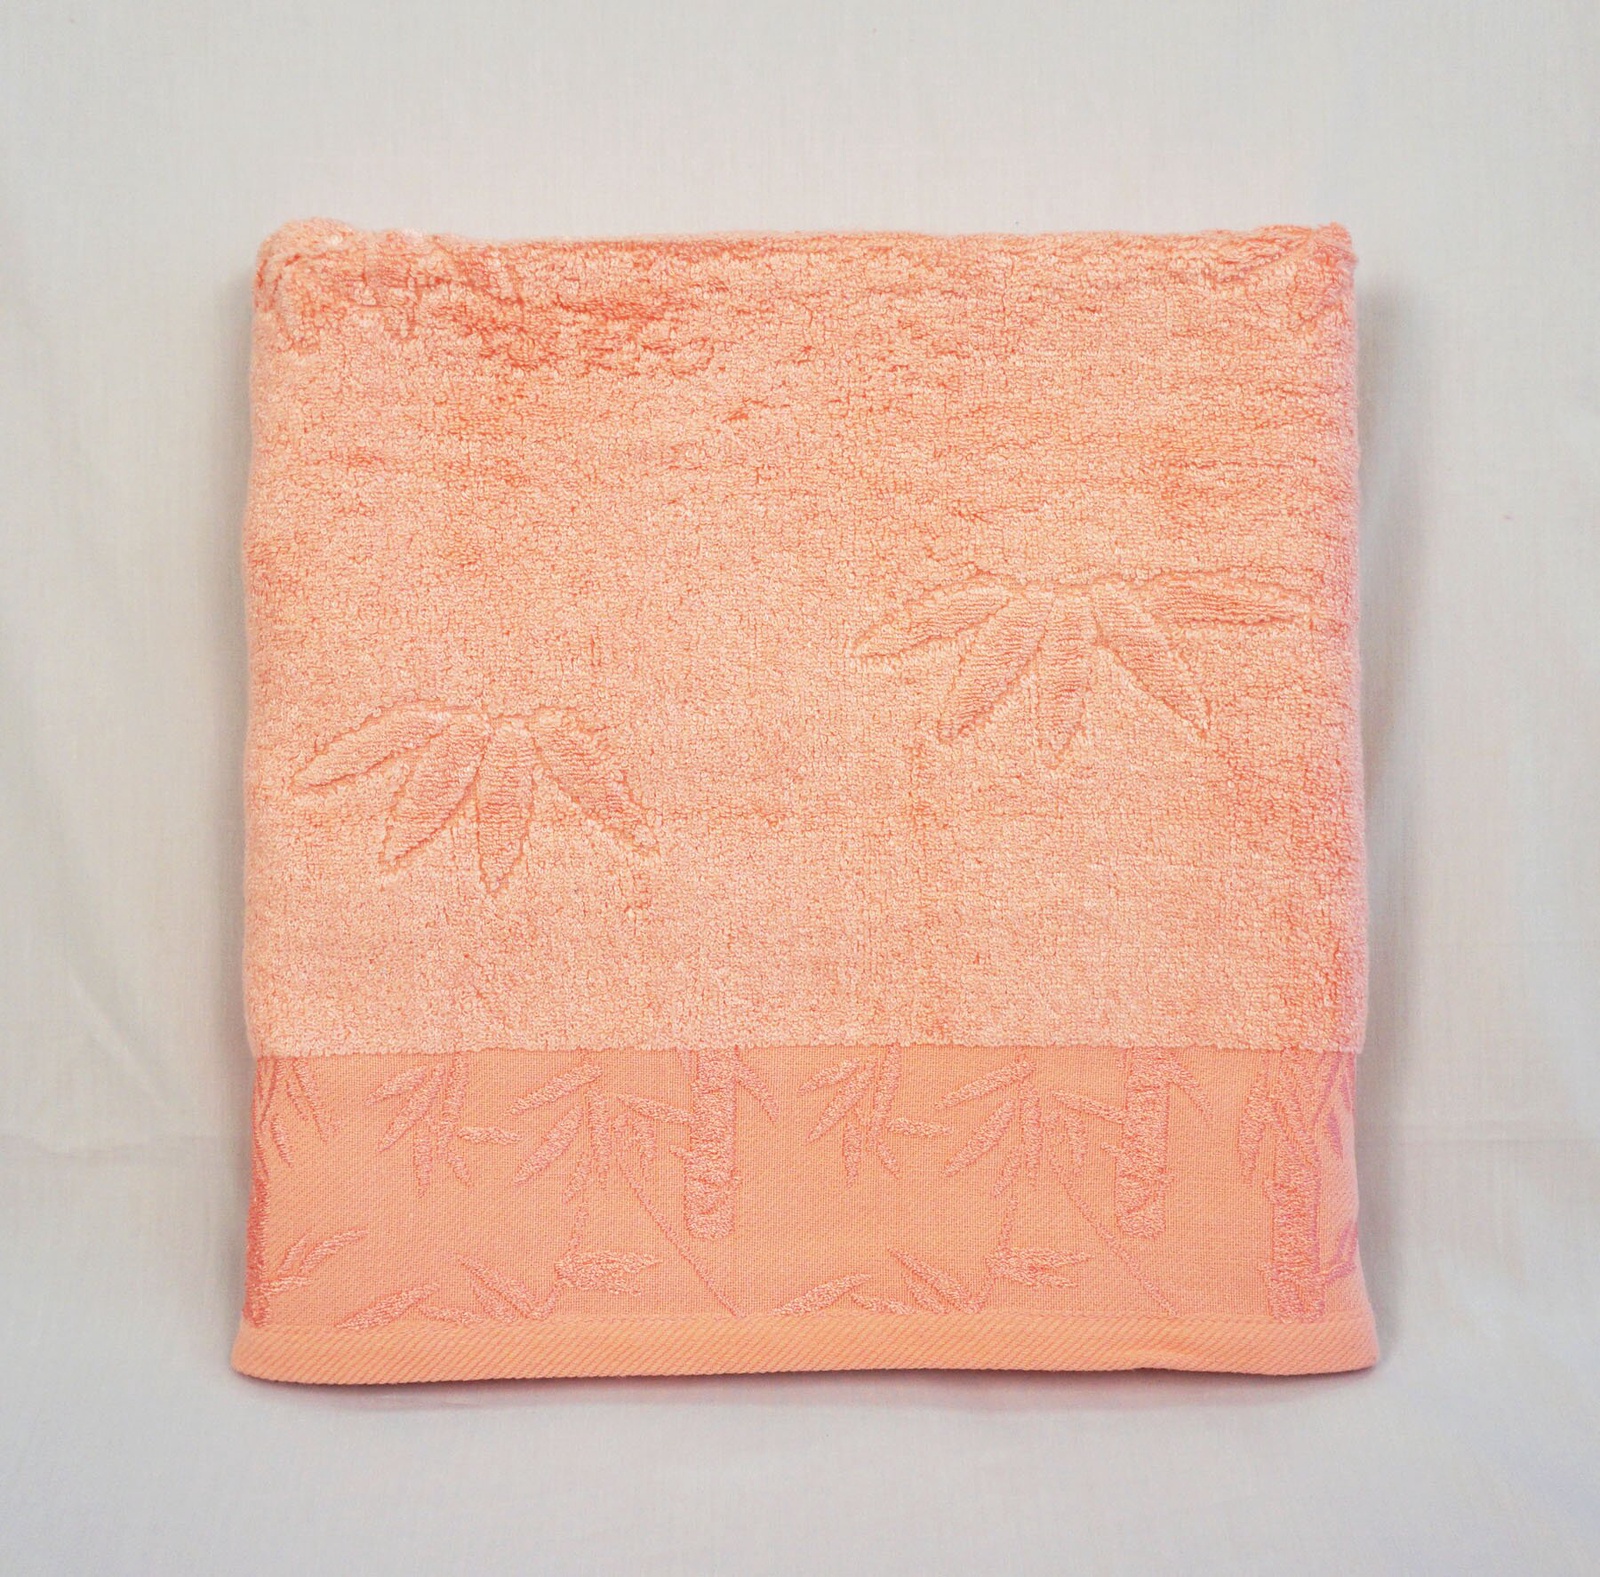 Полотенце банное Grand Stil Бамбук, размер 65*135, GS-H03b, розовый